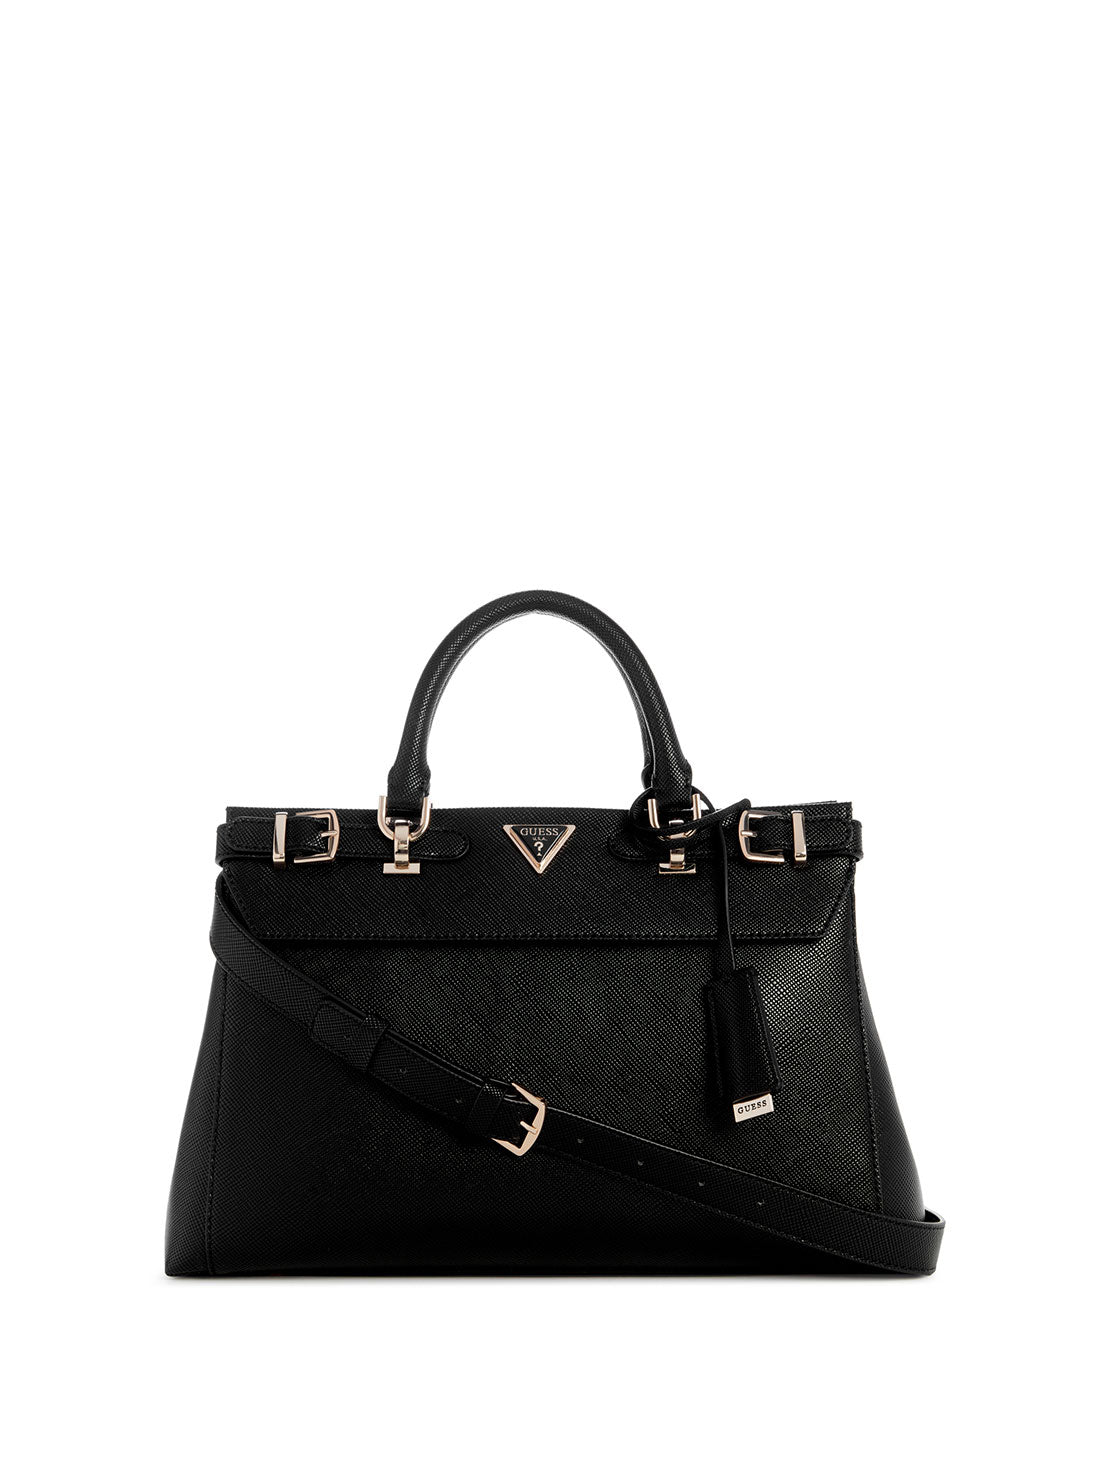 GUESS Black Levante Luxury Satchel Bag front view